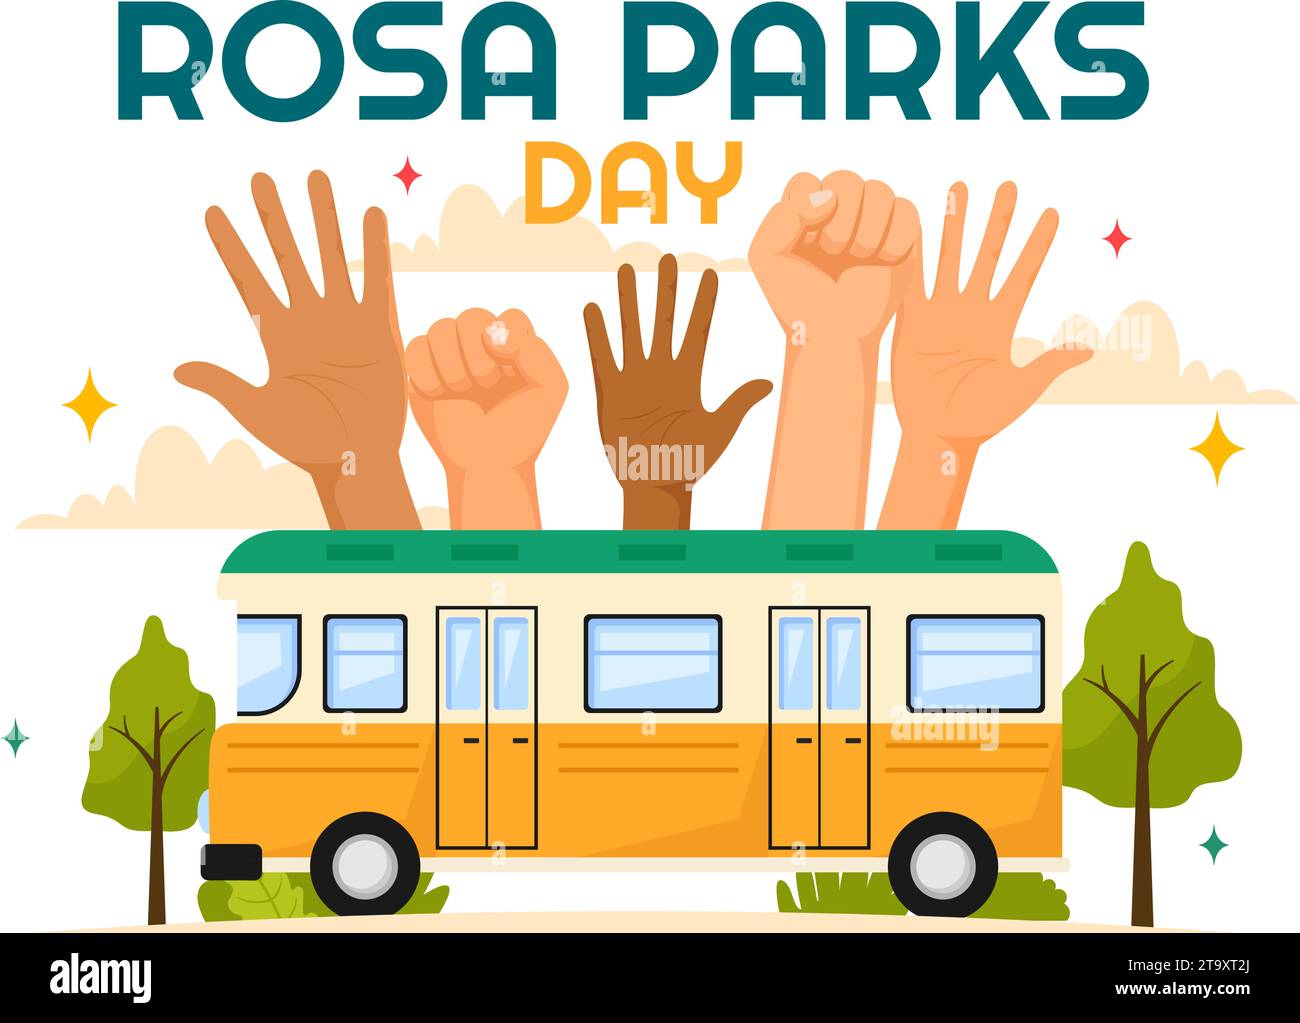 Rosa Parks Tag Vektor Illustration mit der First Lady of Civil Rights, Handschellen und Bus in National Holiday Celebration Flat Cartoon Hintergrund Stock Vektor